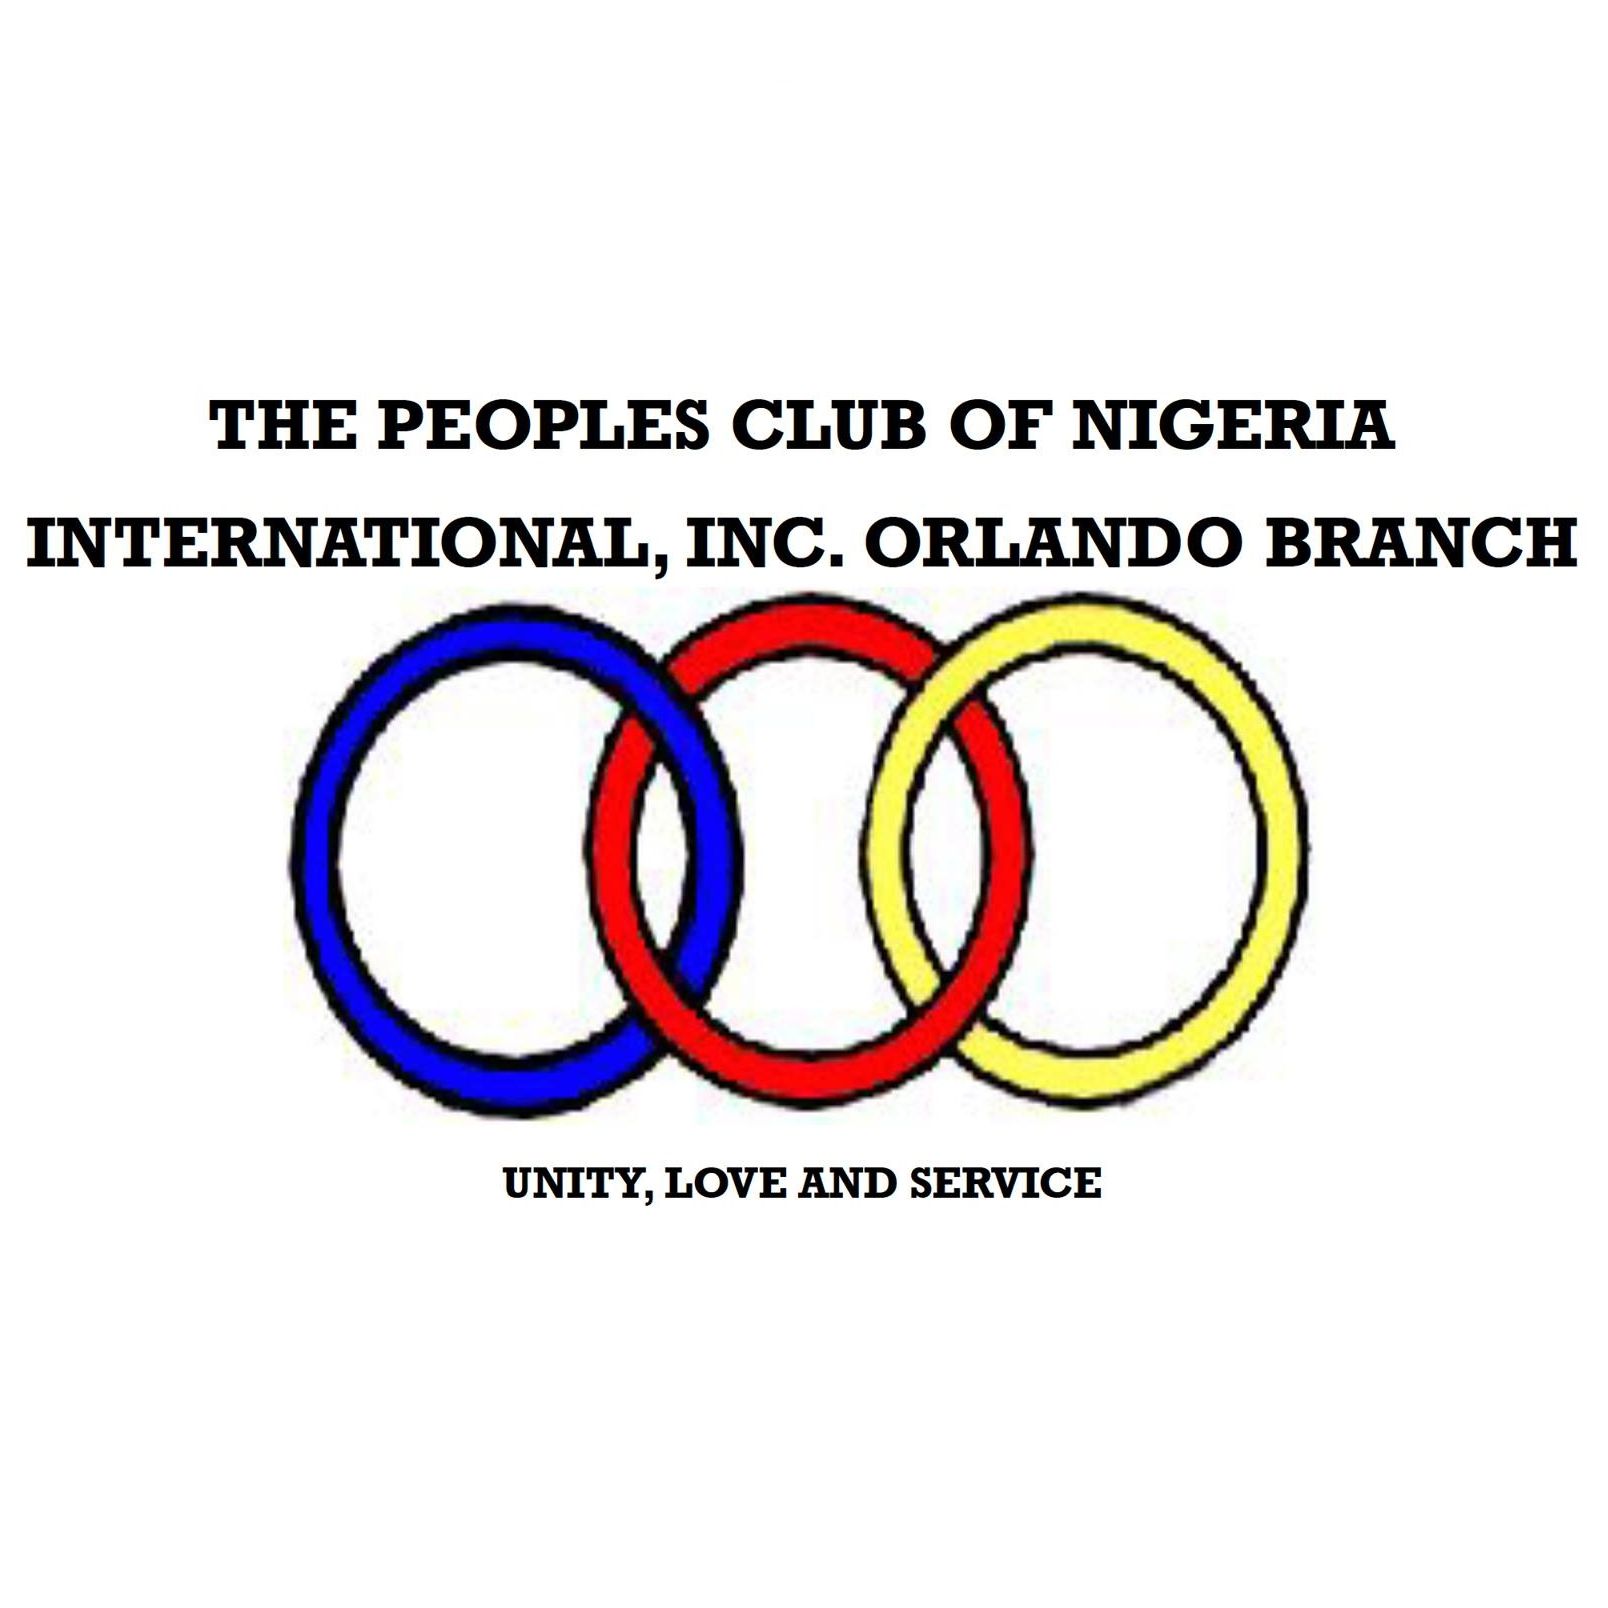 Nigerian Organizations Near Me - Peoples Club of Nigeria Orlando Branch